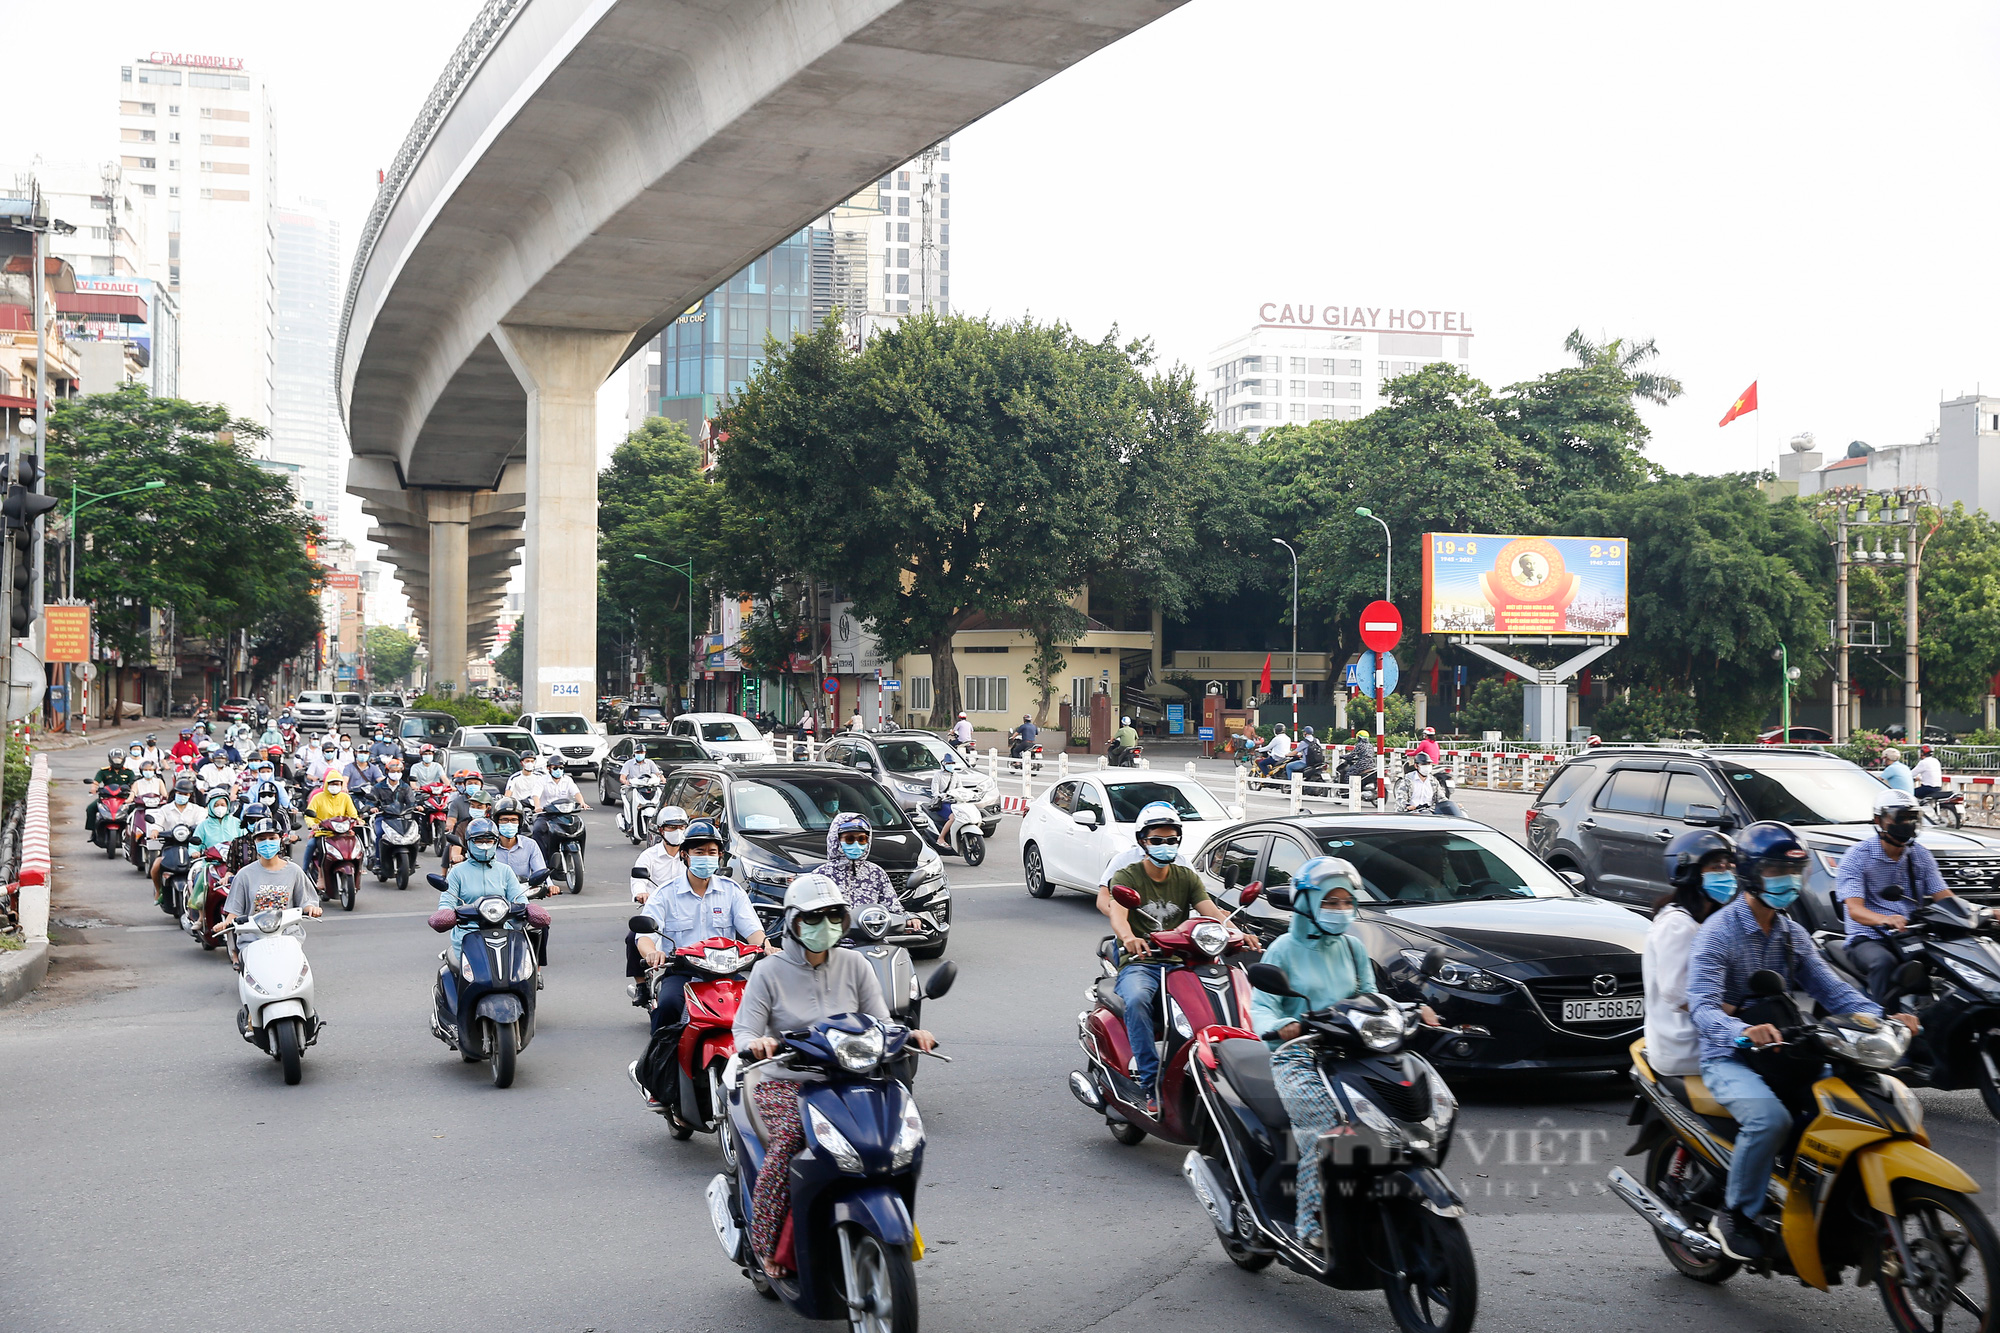 Sự sôi động tại những ngã 4 đèn đỏ này chắc chắn sẽ giúp bạn cảm thấy như mình đang sống trong bức tranh đầy màu sắc của thành phố Hà Nội. Rõ ràng, bức ảnh này sẽ cho bạn thấy sự độc đáo và sự phát triển của đất nước Việt Nam.